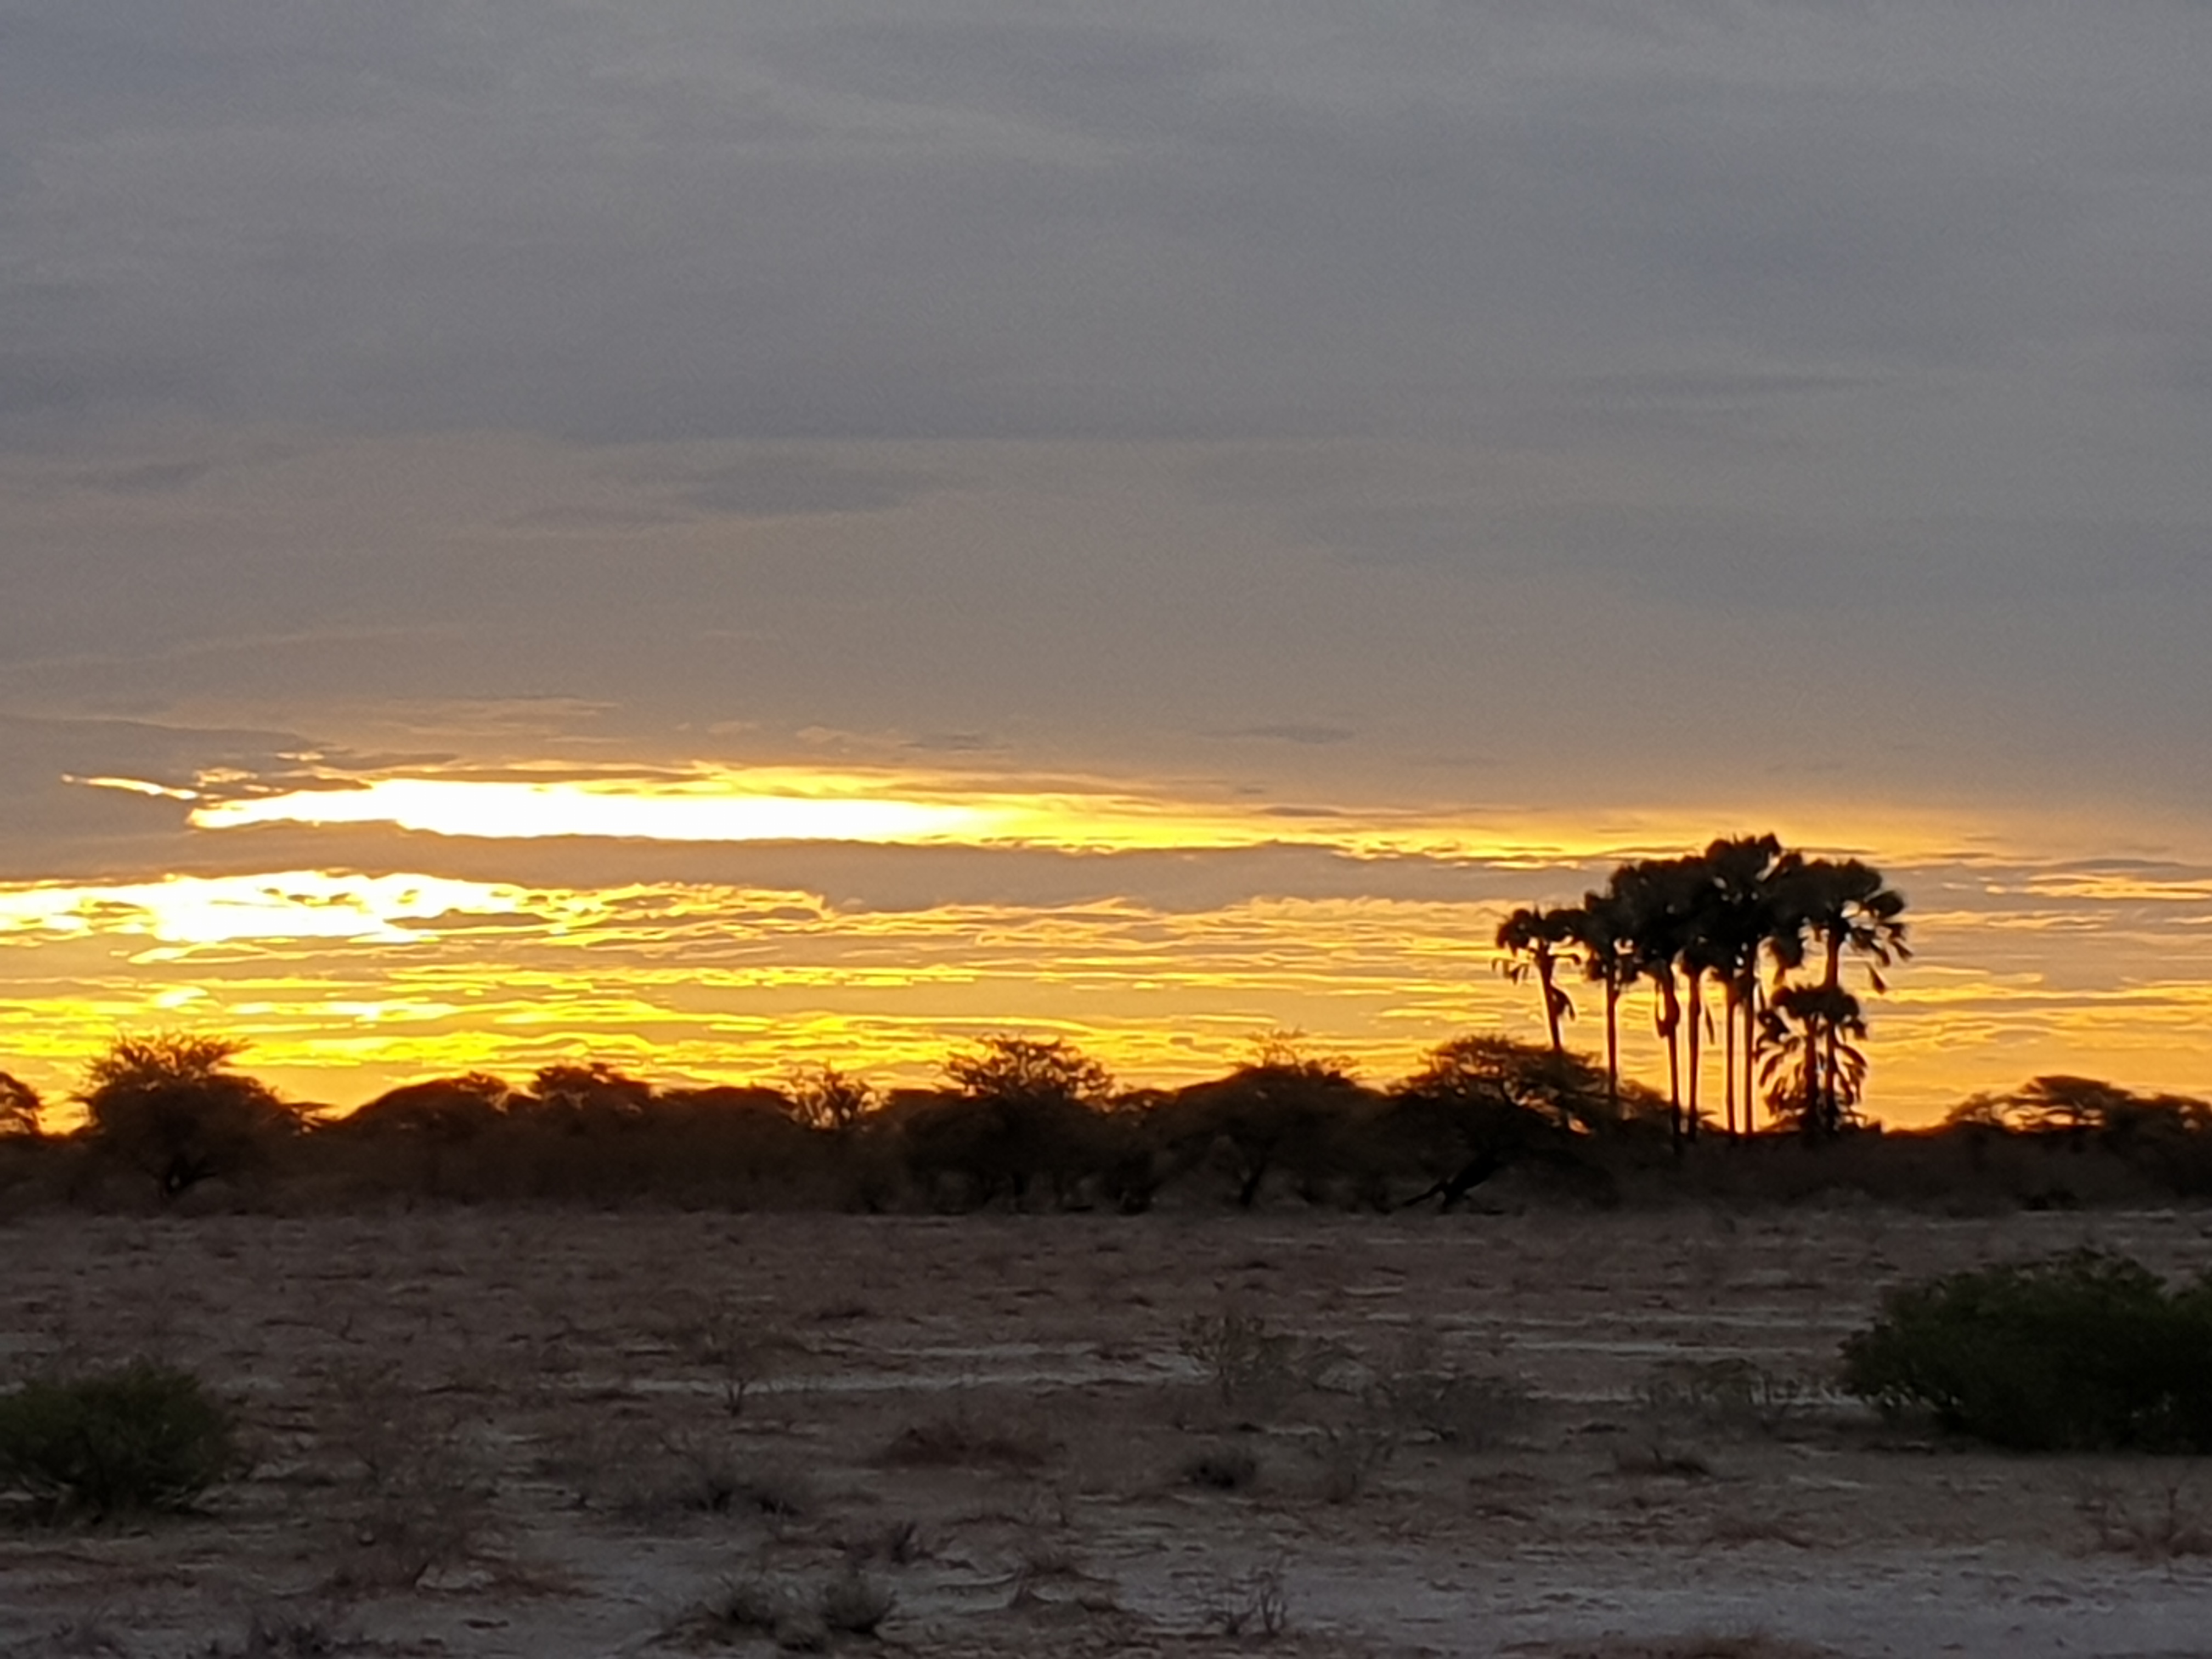 Coucher de soleil avec bosquet de palmiers Macalani (Macalani palm, Hyphaene petersiana), Onguma Nature Reserve, Etosha, Namibie.